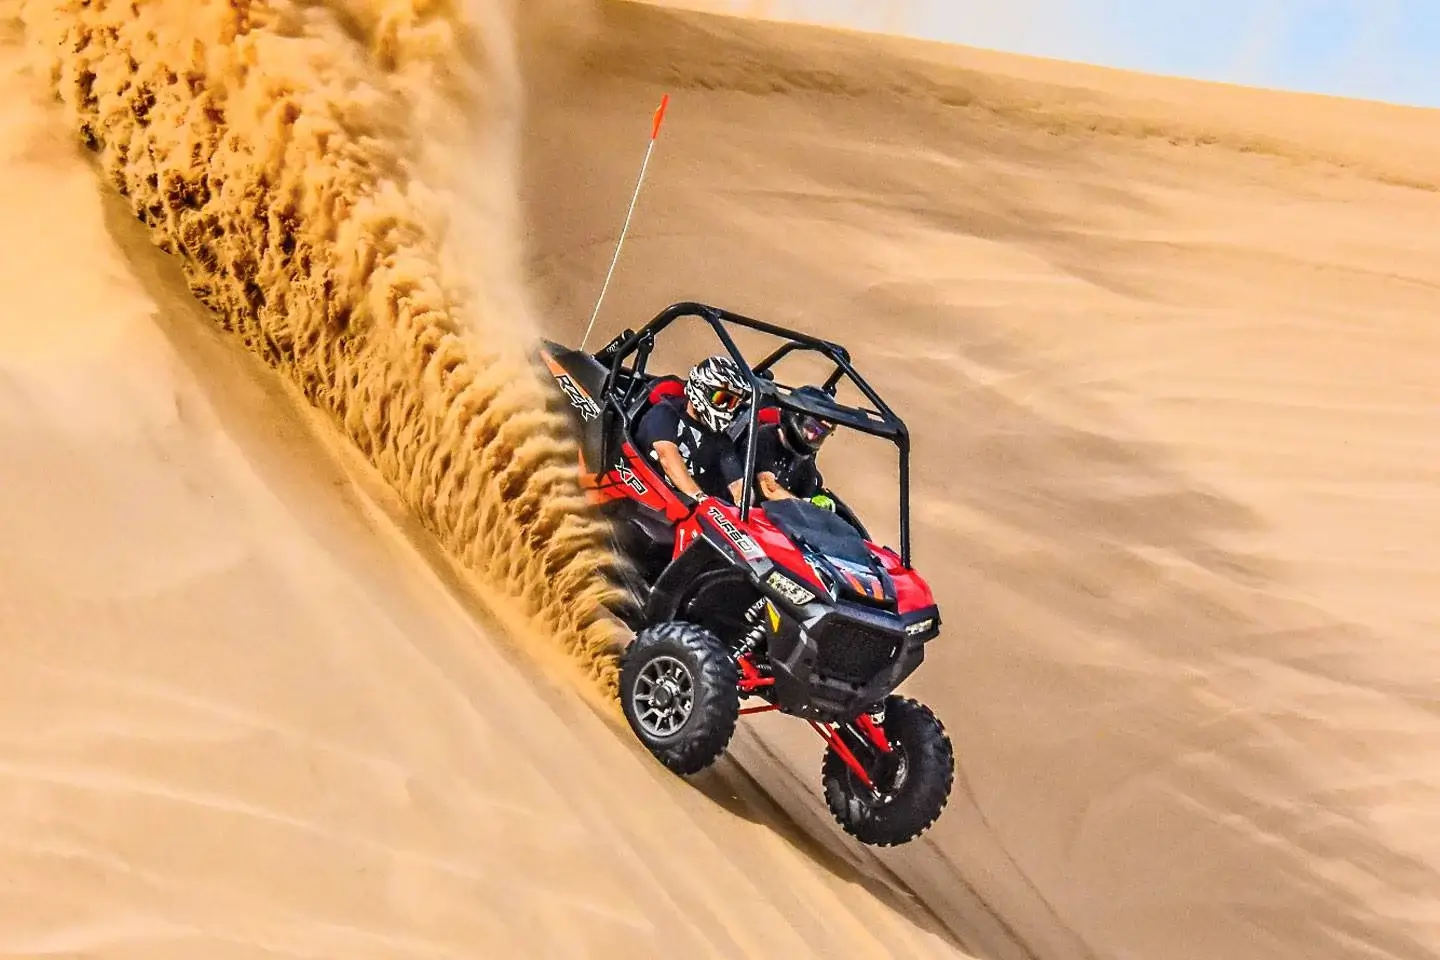 Dune Buggy in Dubai